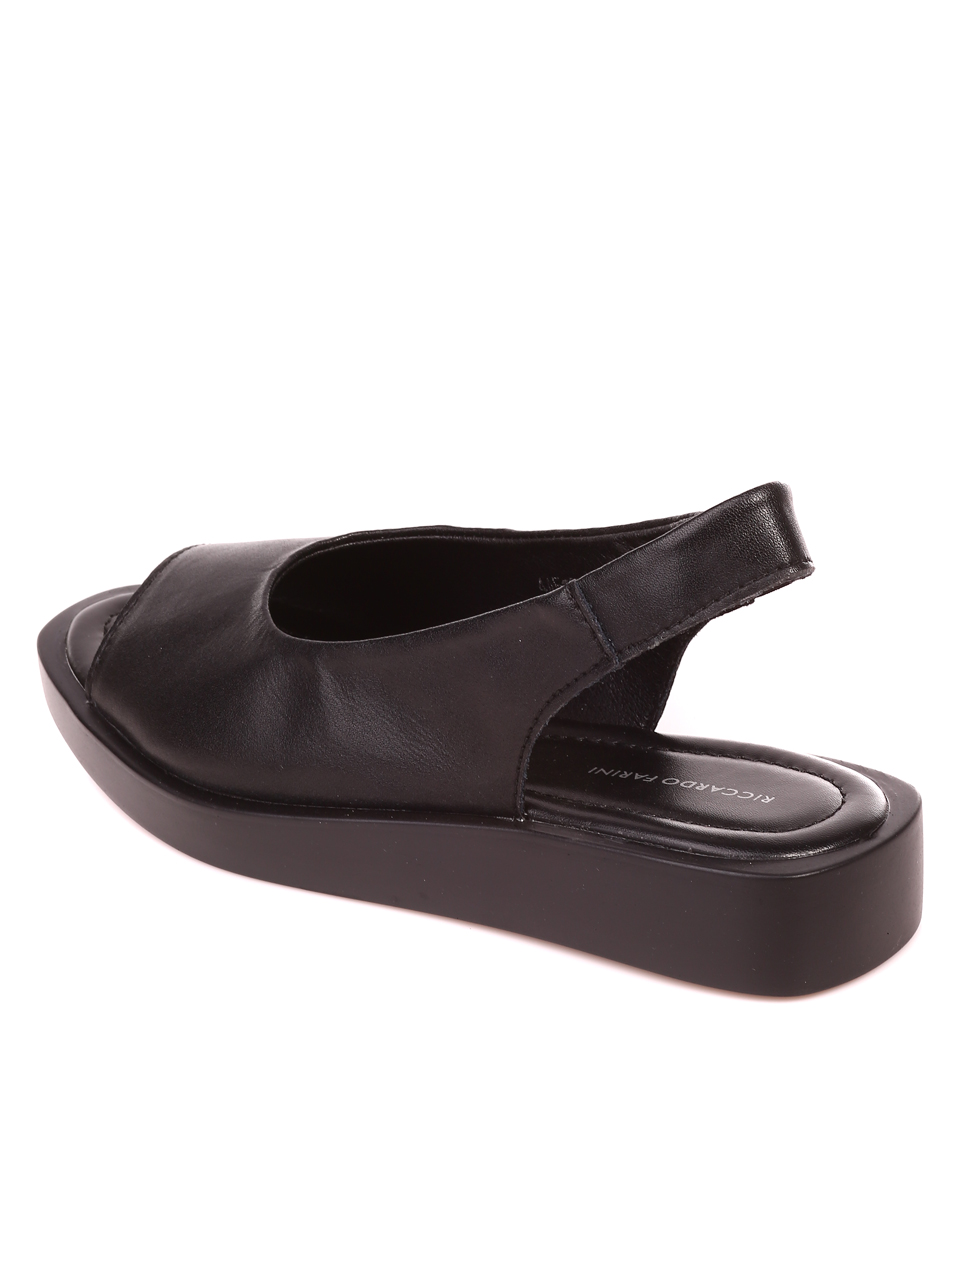 Ежедневни дамски сандали от естествена кожа 4AF-22152 black